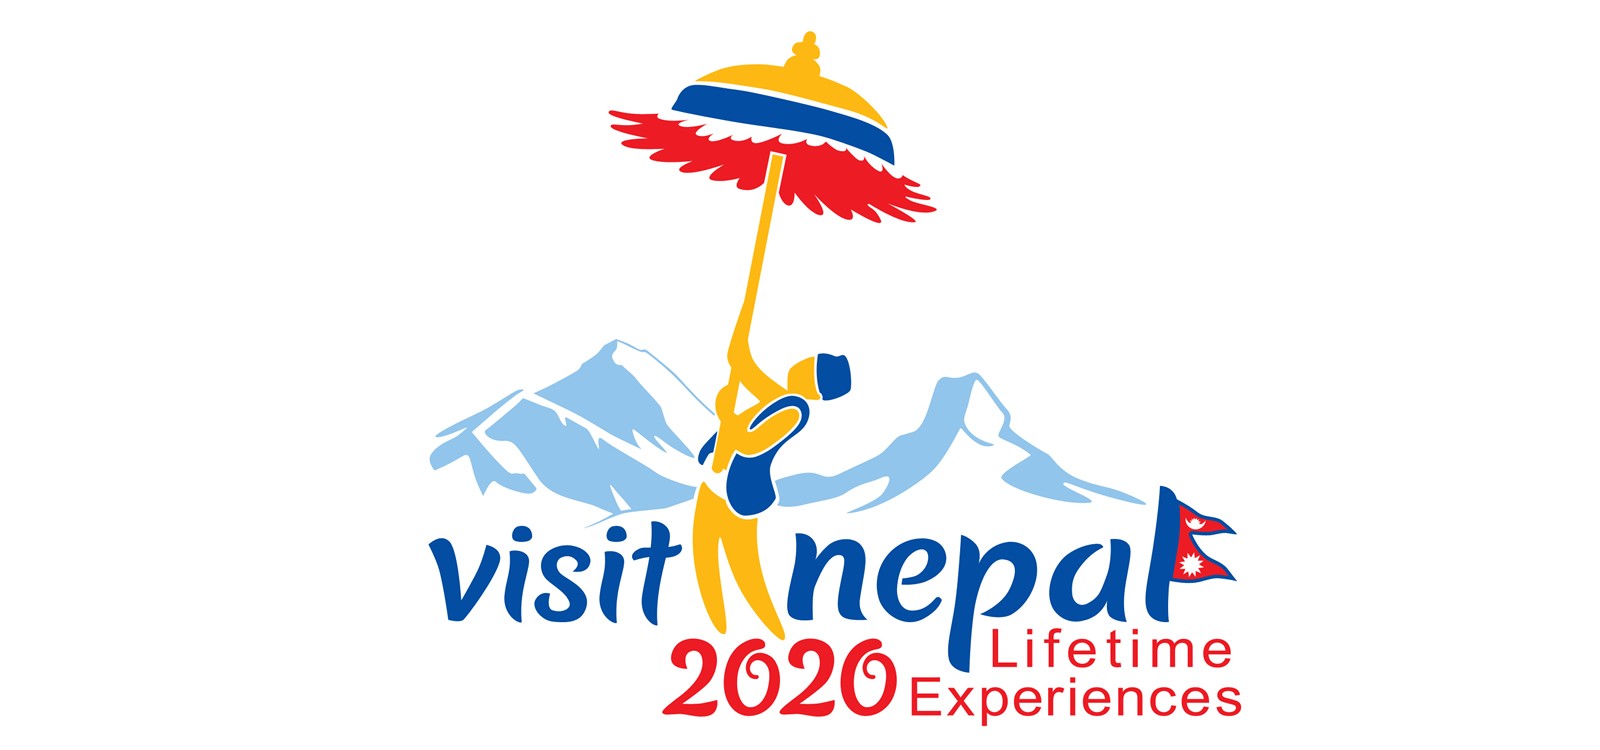 नेपाल भ्रमण वर्ष २०२० लाई लक्षित गरी विदेशमा हुने पर्यटन प्रचारप्रसारका कार्यक्रम स्थगित